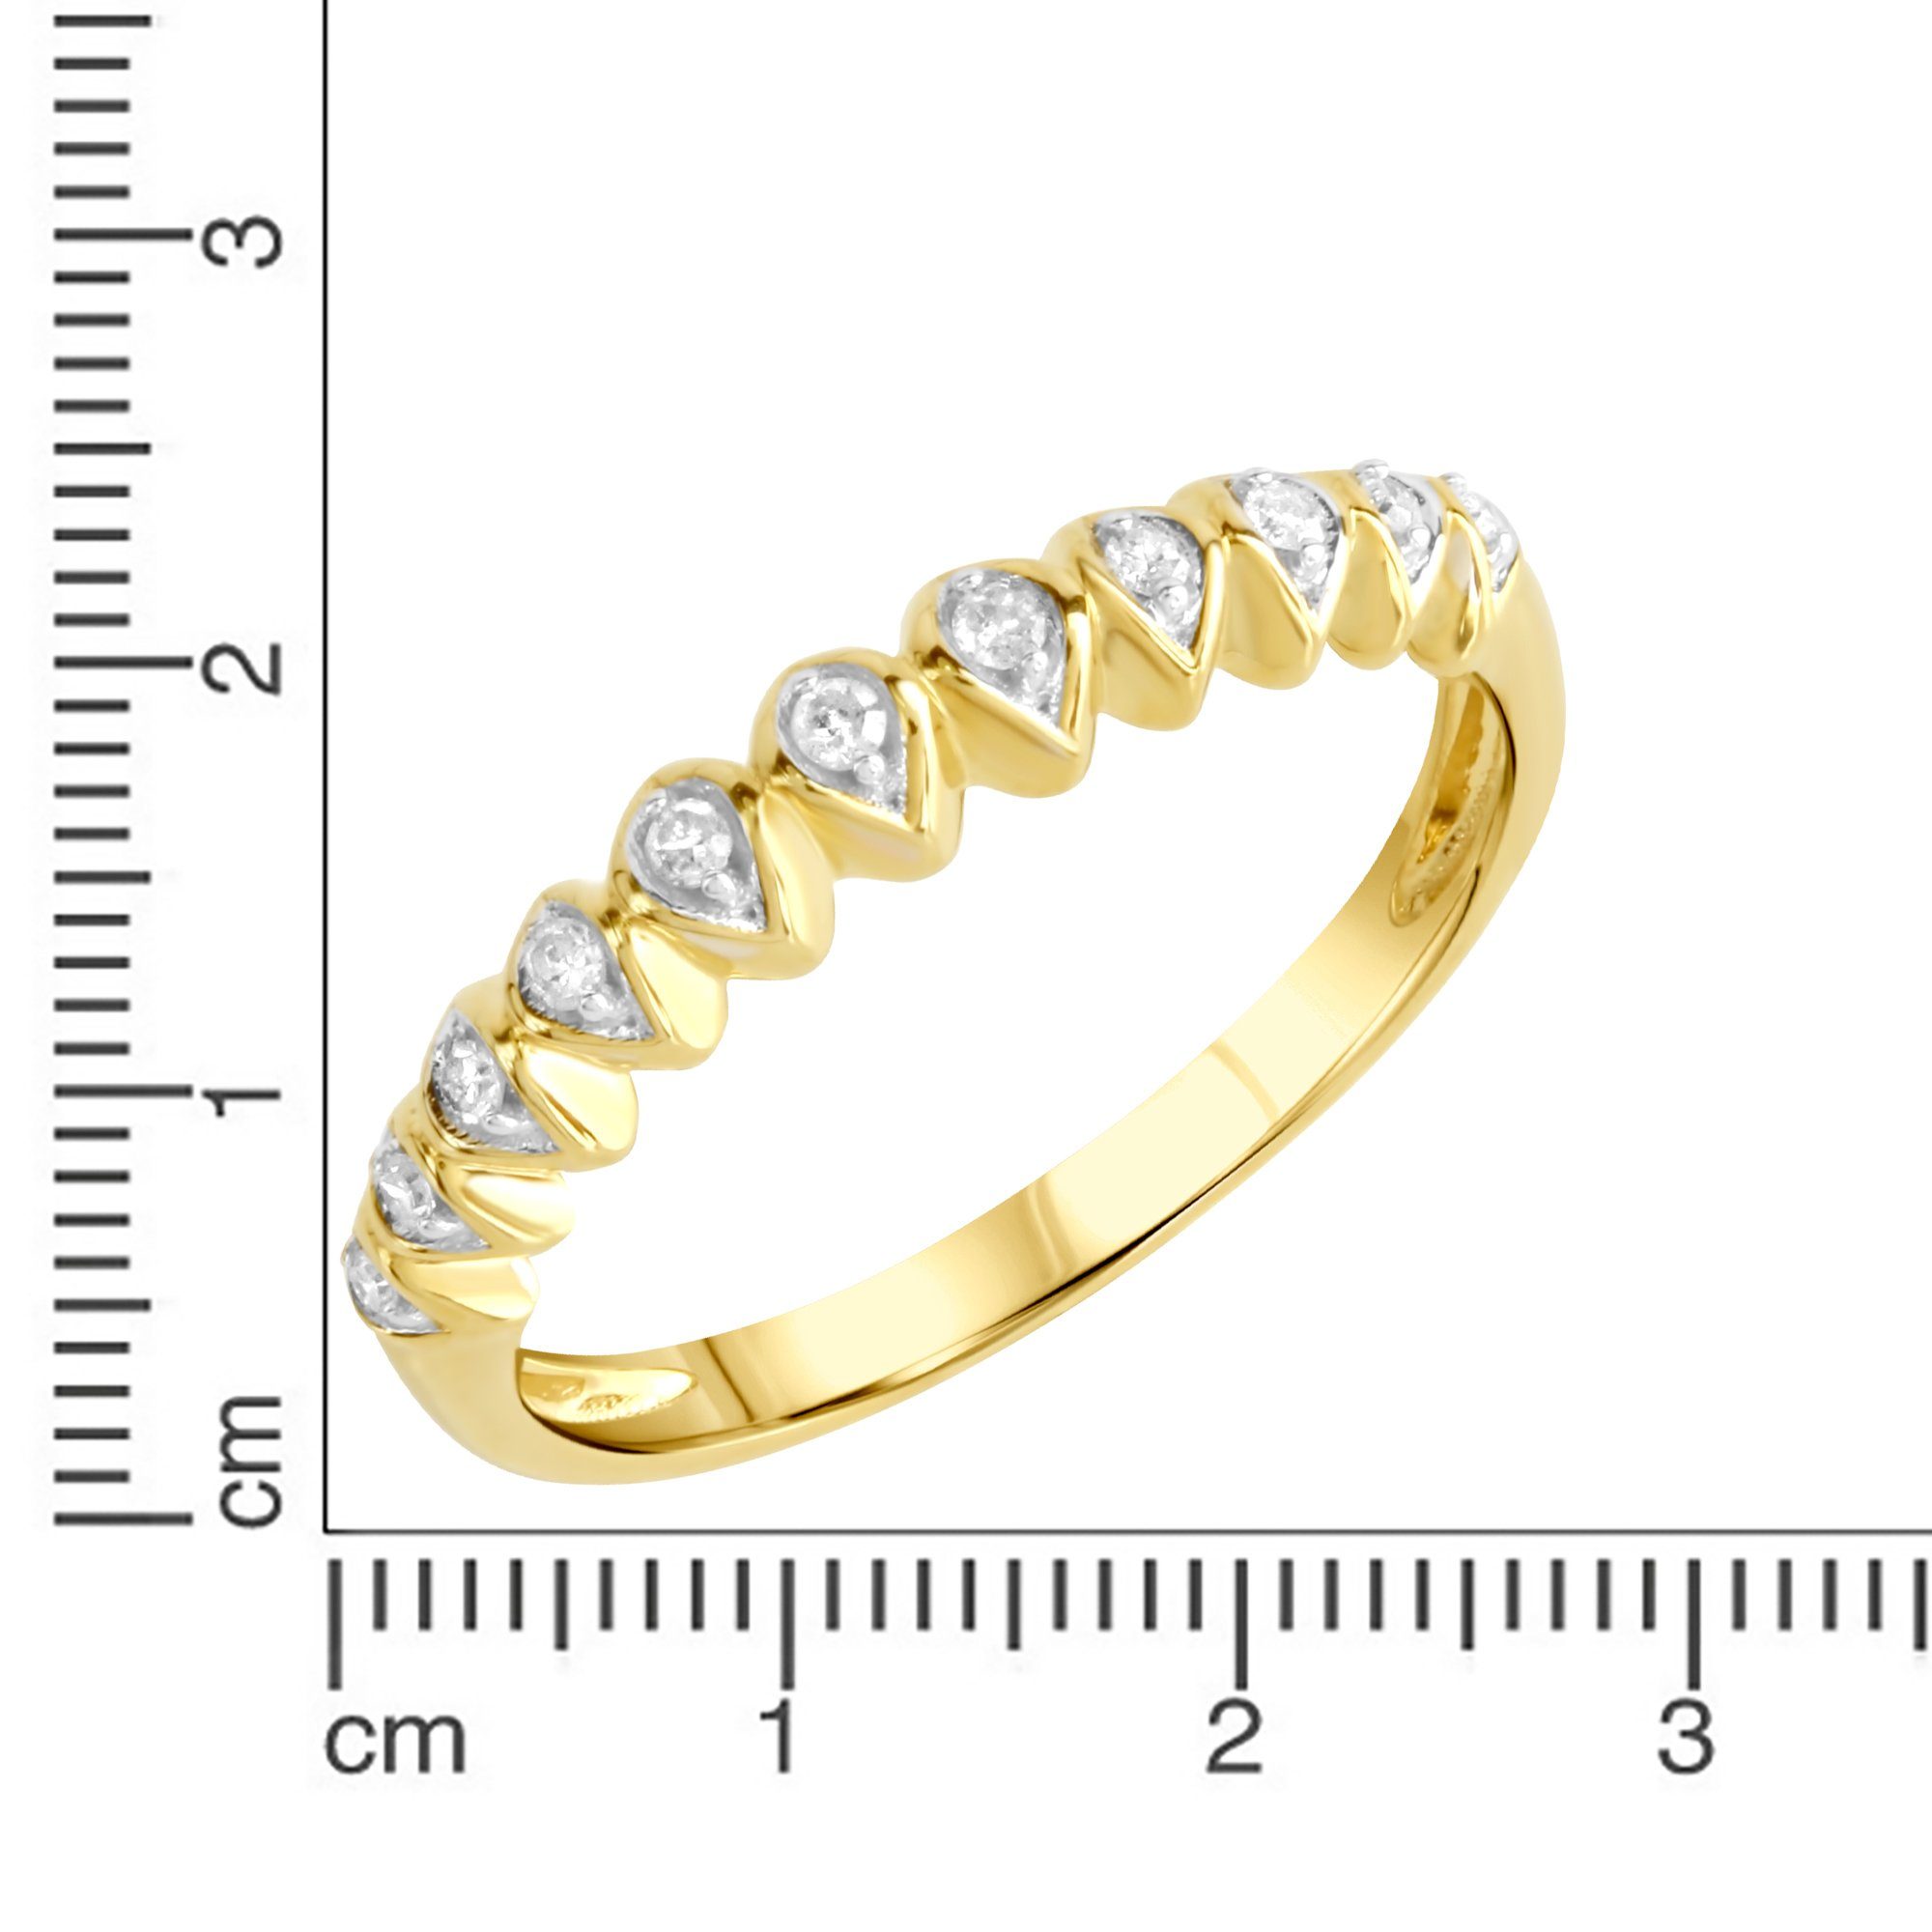 by Gold K. gelb Diamonds Ellen Diamant 375 zweifarbig 0,1ct. Fingerring